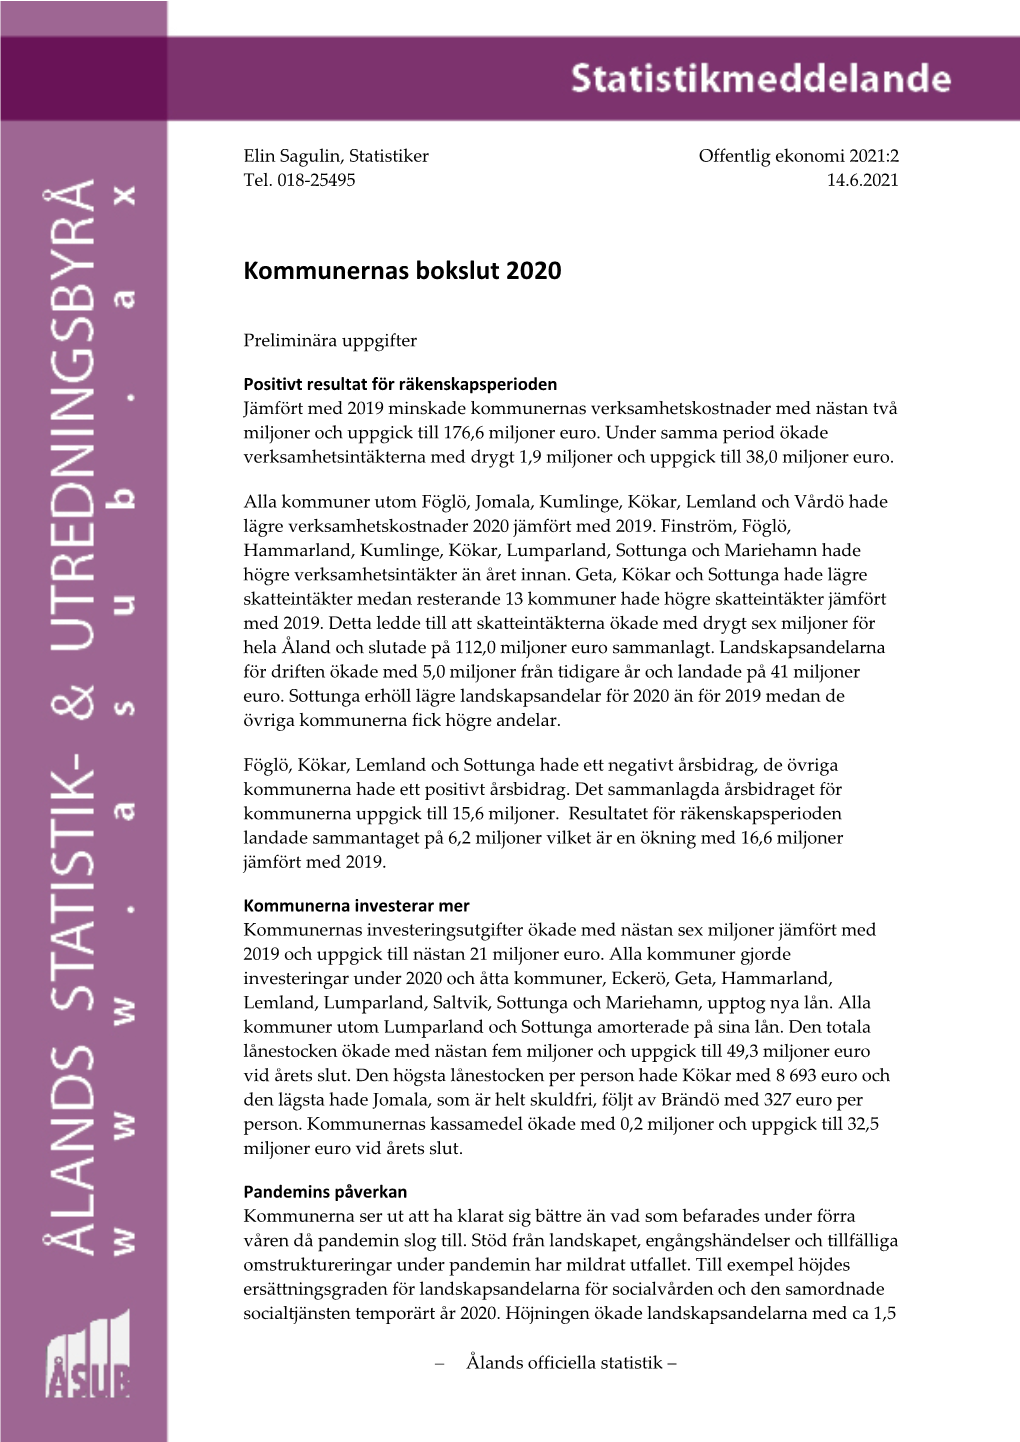 Kommunernas Bokslut 2020, Preliminära Uppgifter (PDF)